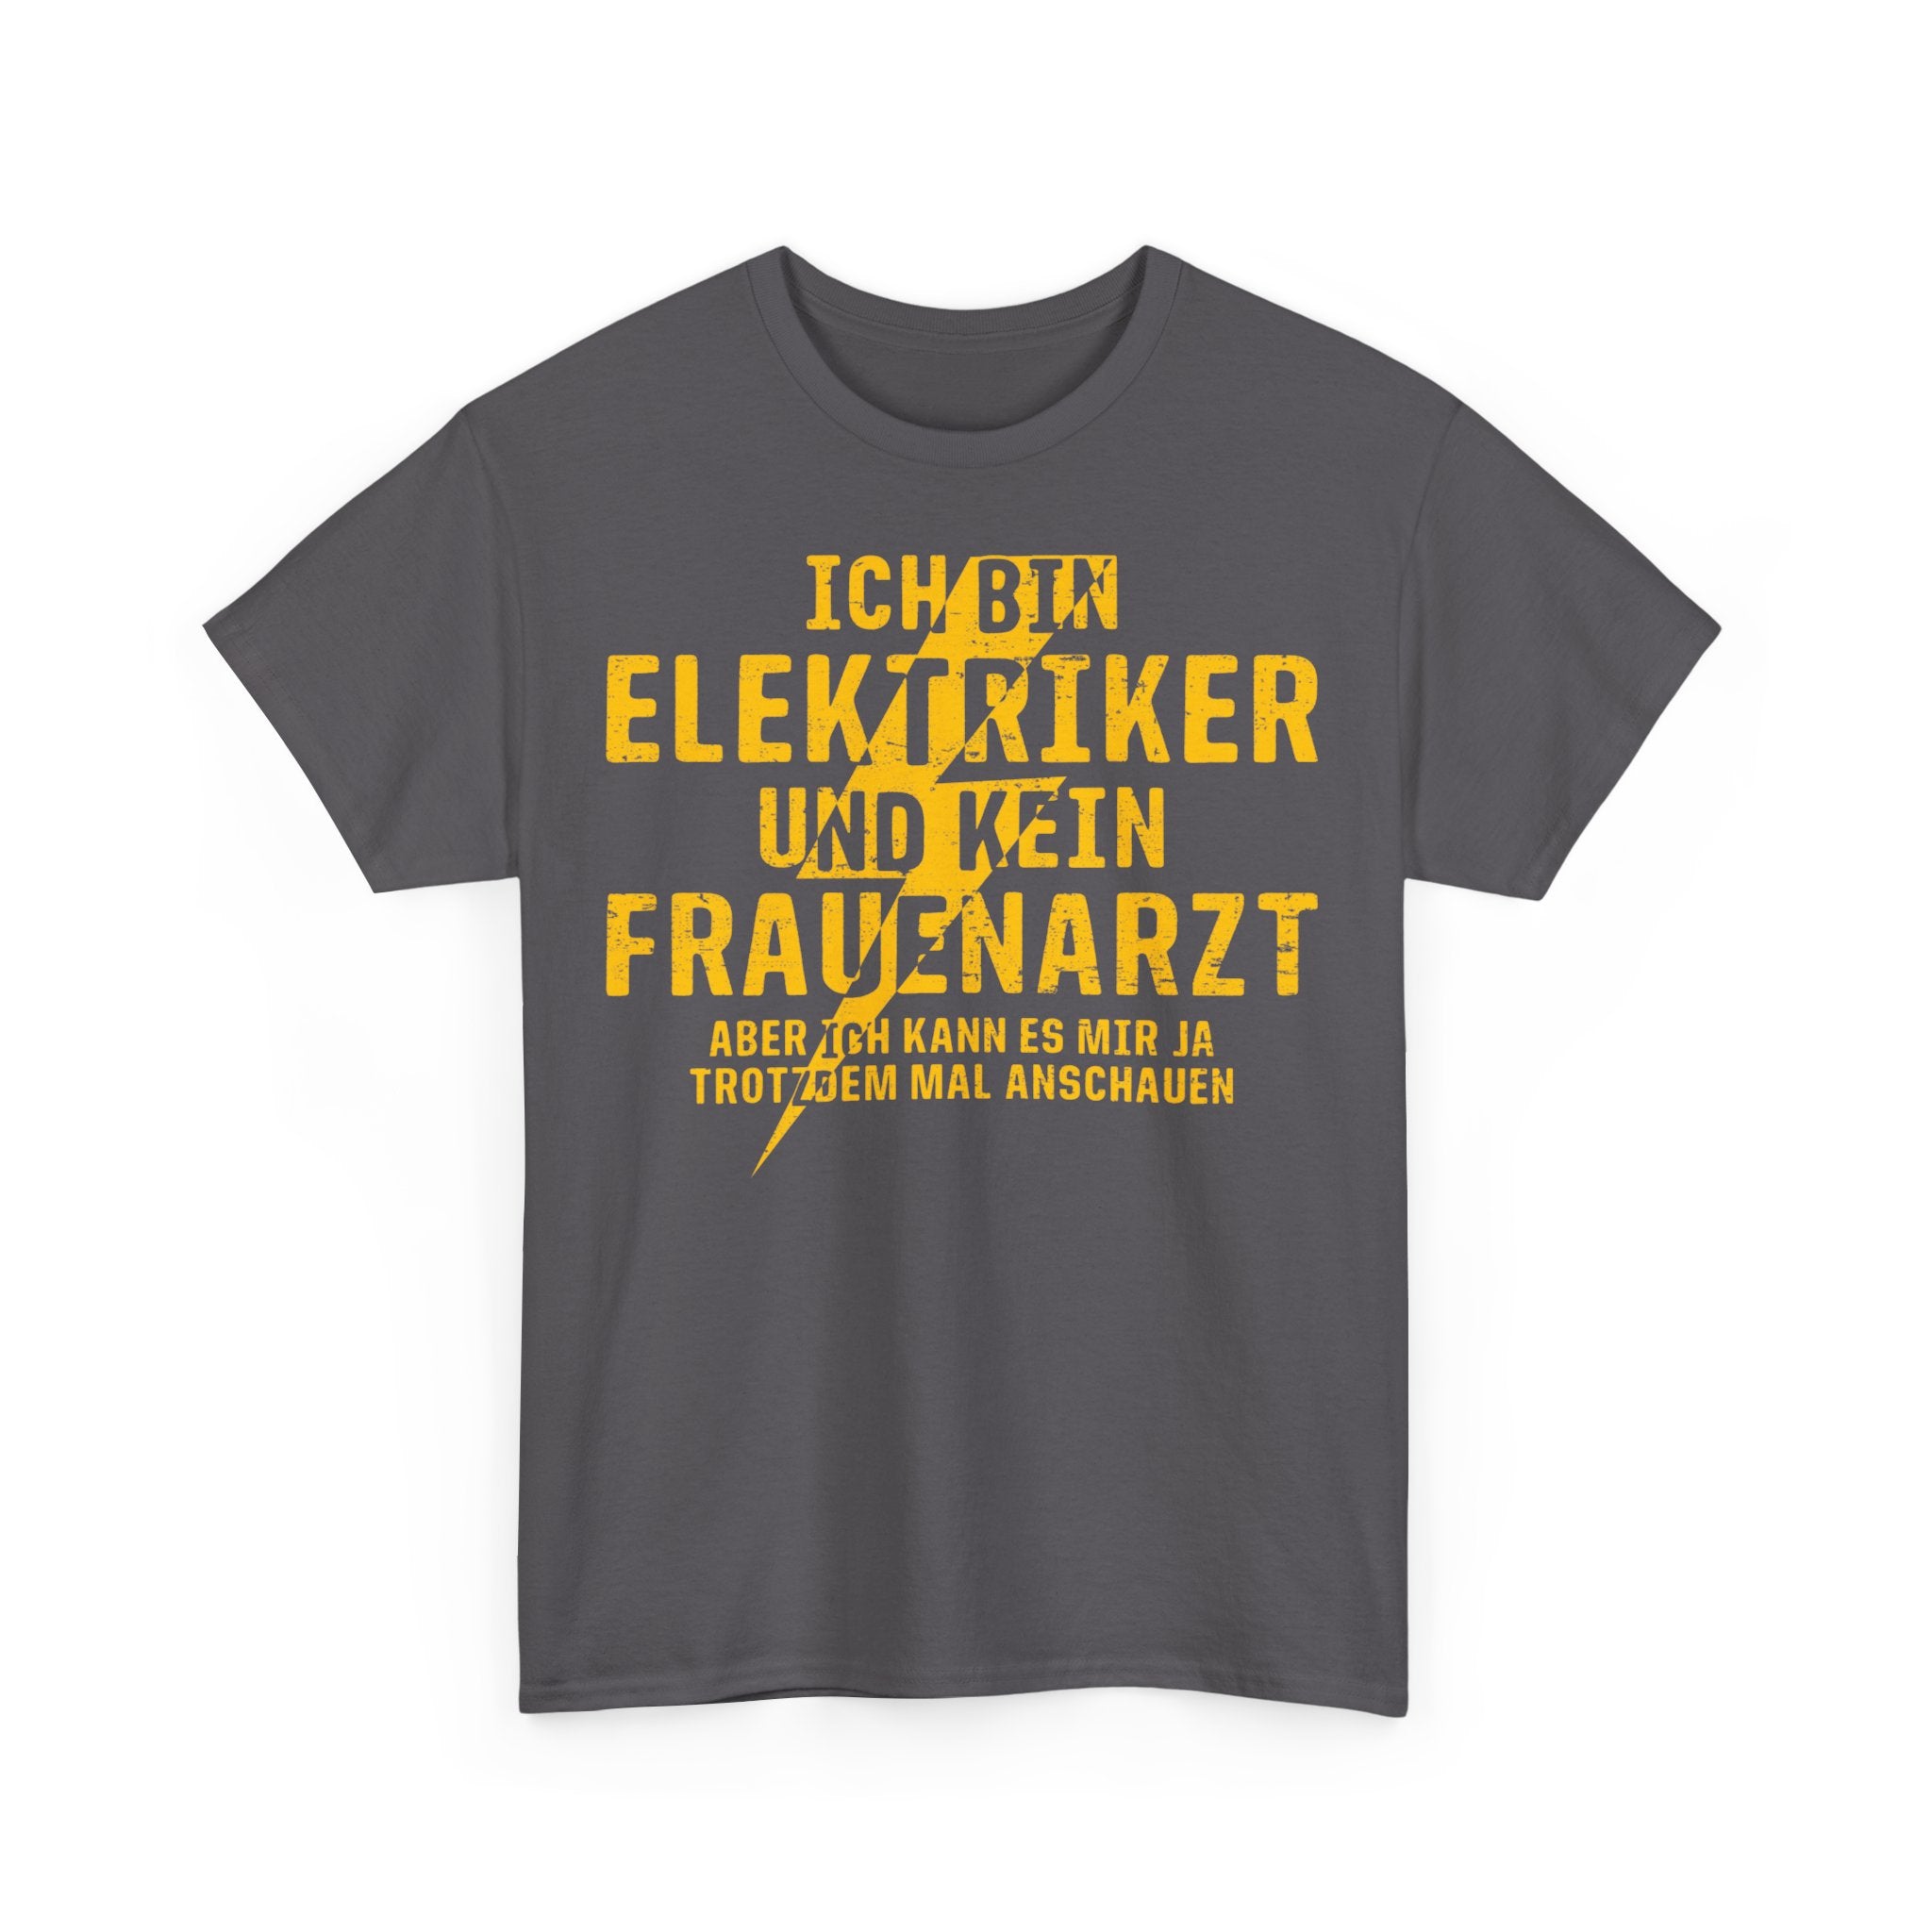 Elektriker T-Shirt Bin Elektriker und kein Frauenarzt Lustiges Witziges Shirt